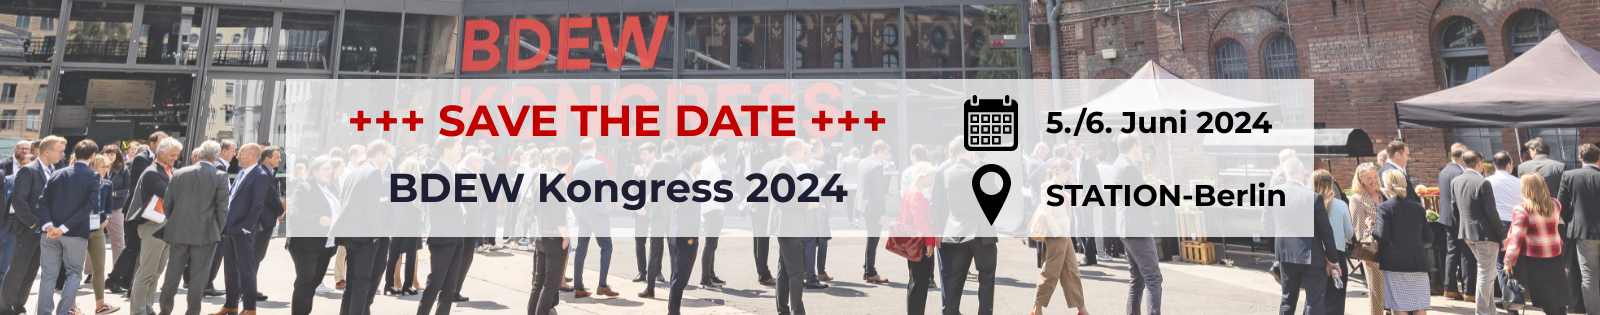 Werbebanner: Save the Date für den BDEW Kongress 2024 am 5./6. Juni 2024 in der STATION-Berlin